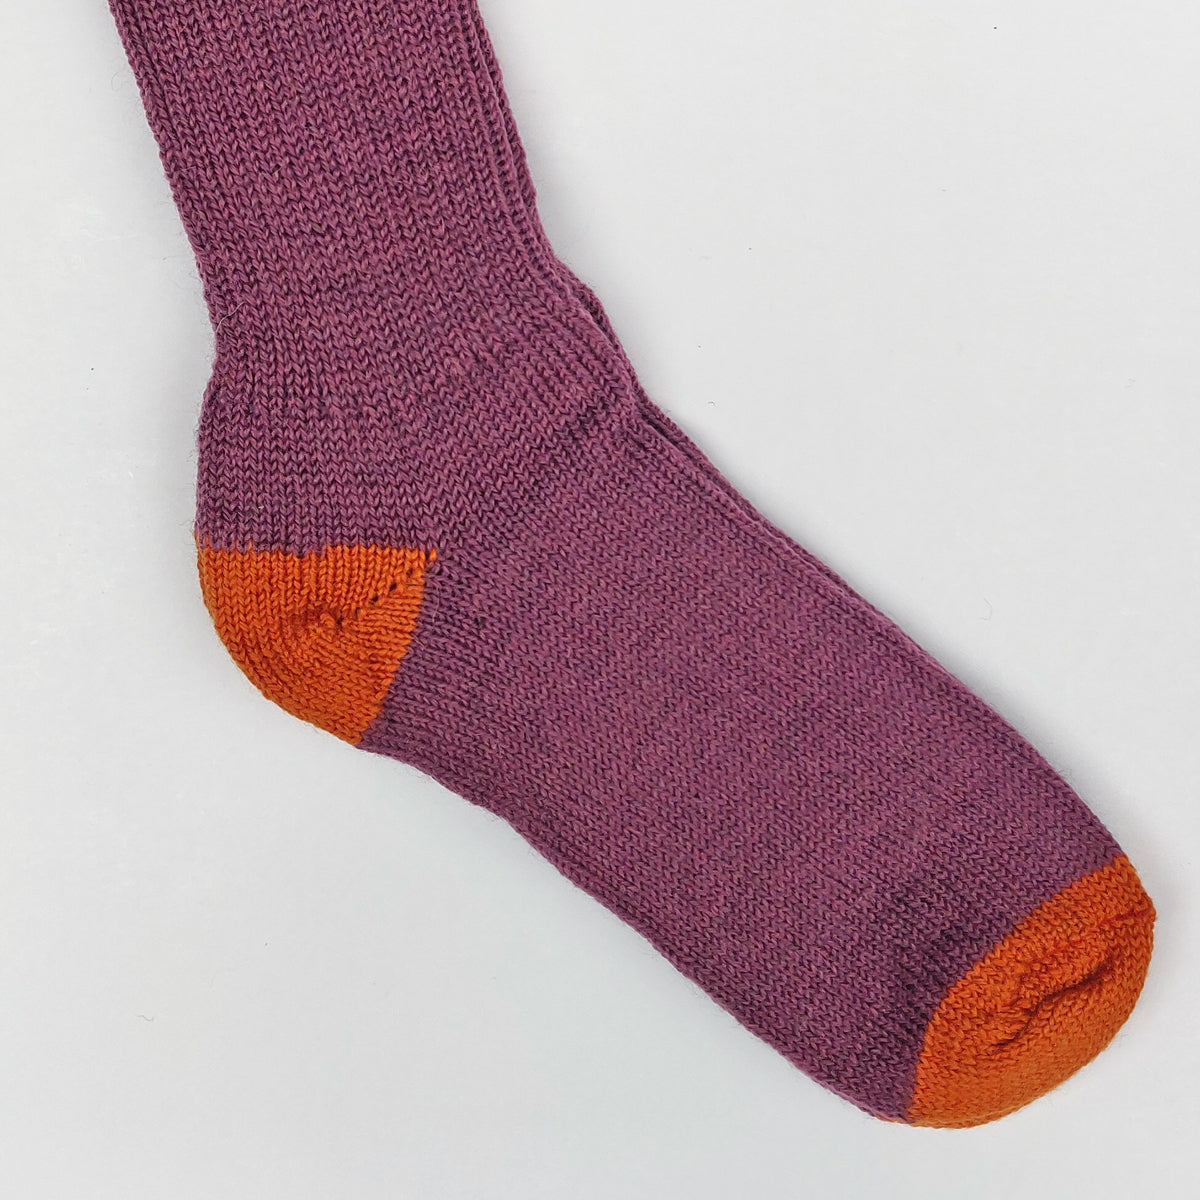 Arbon Socks 'The Exmoor' Unisex Wool Socks